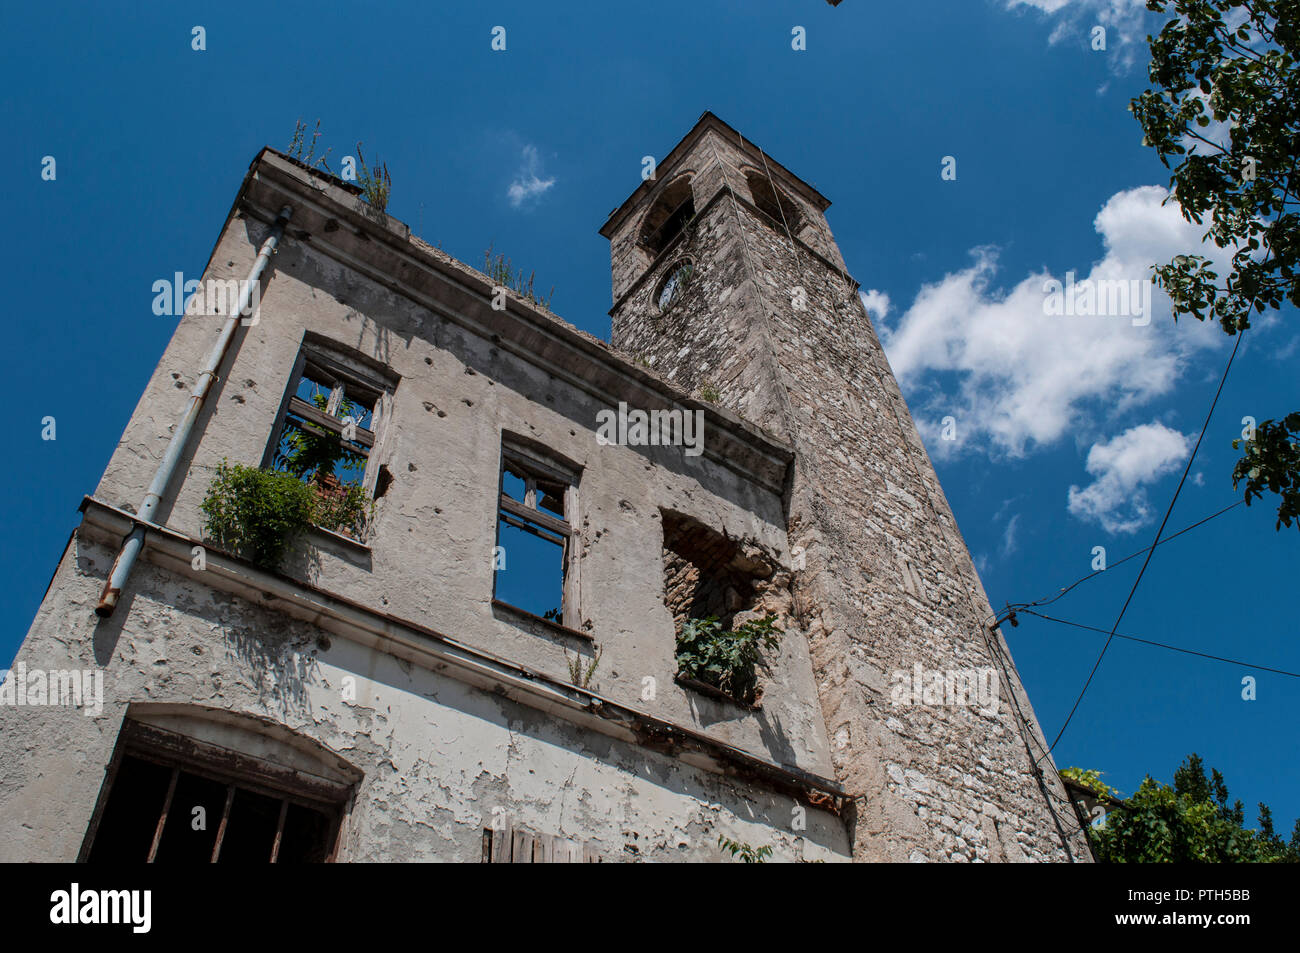 Mostar : la Tour de l'horloge (Sahat Kula), exemple important de la prolifique période ottomane, datée du 1630, bombardée et endommagés dans la guerre de Bosnie (1992-1995) Banque D'Images